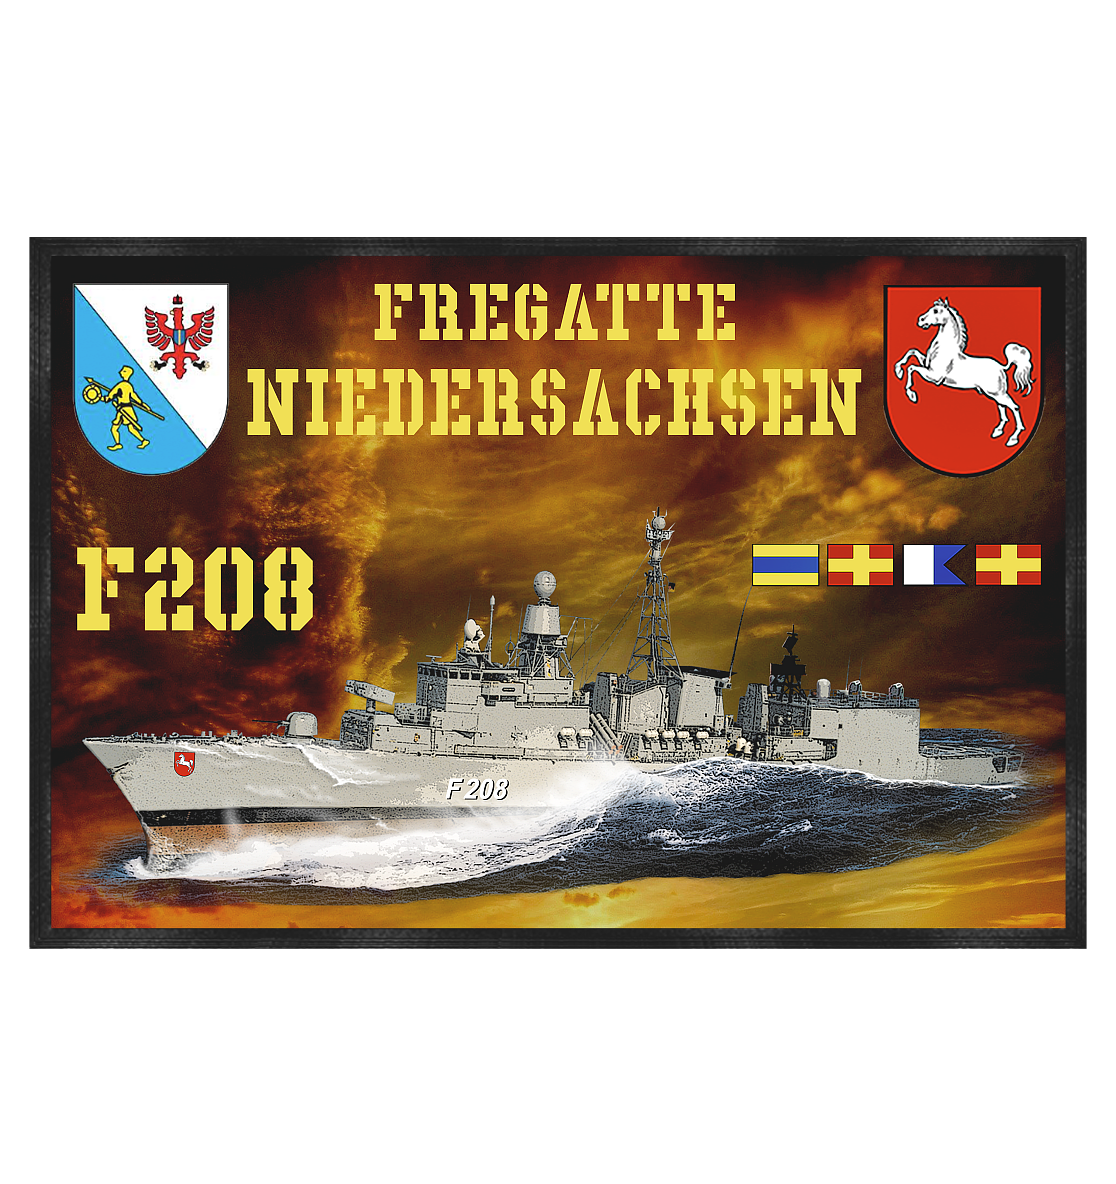 Fregatte F208 NIEDERSACHSEN - Fußmatte 60x40cm